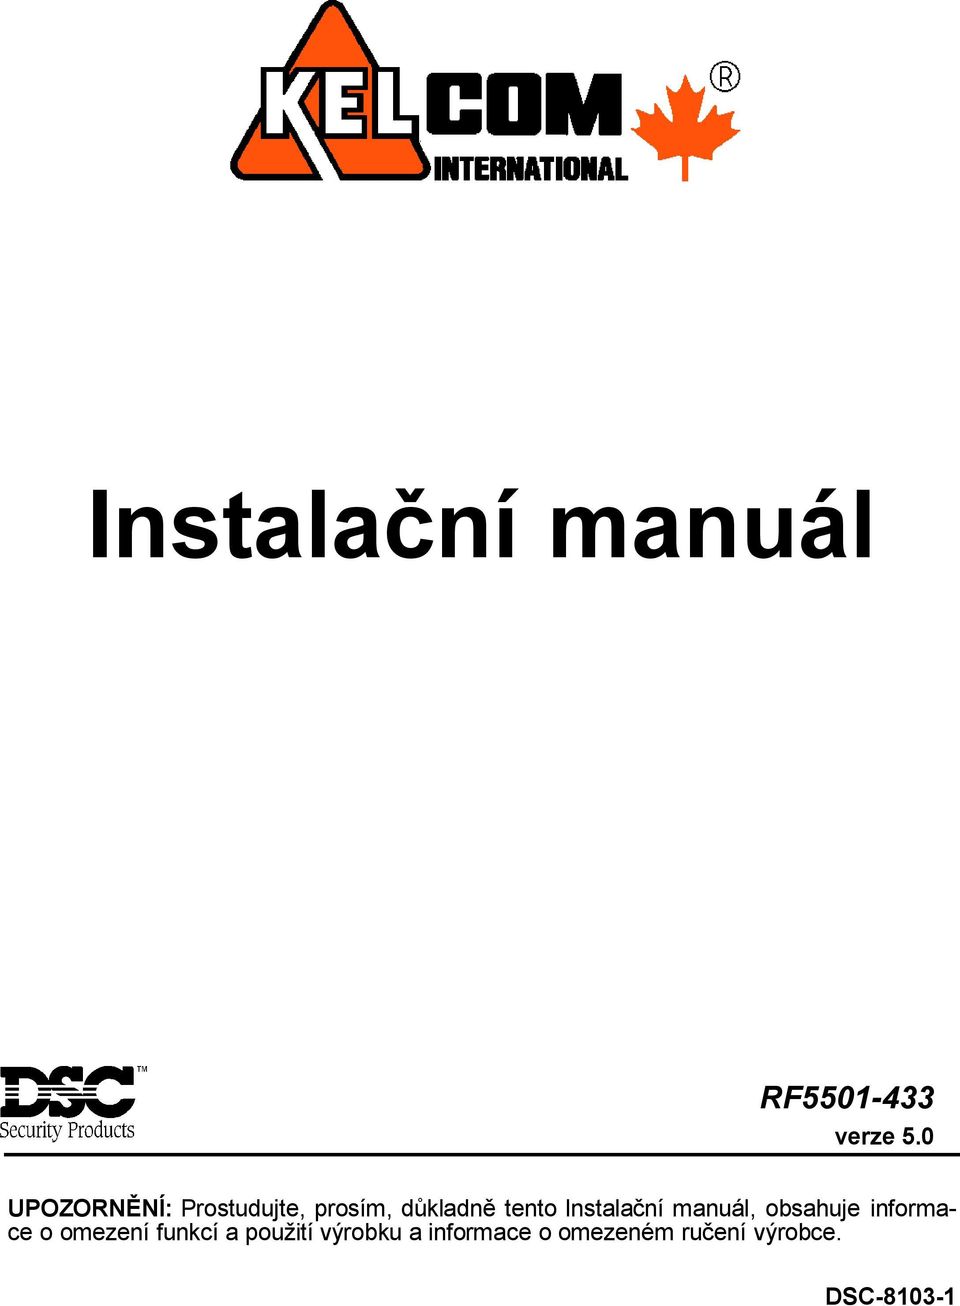 Instalační manuál, obsahuje informace o omezení